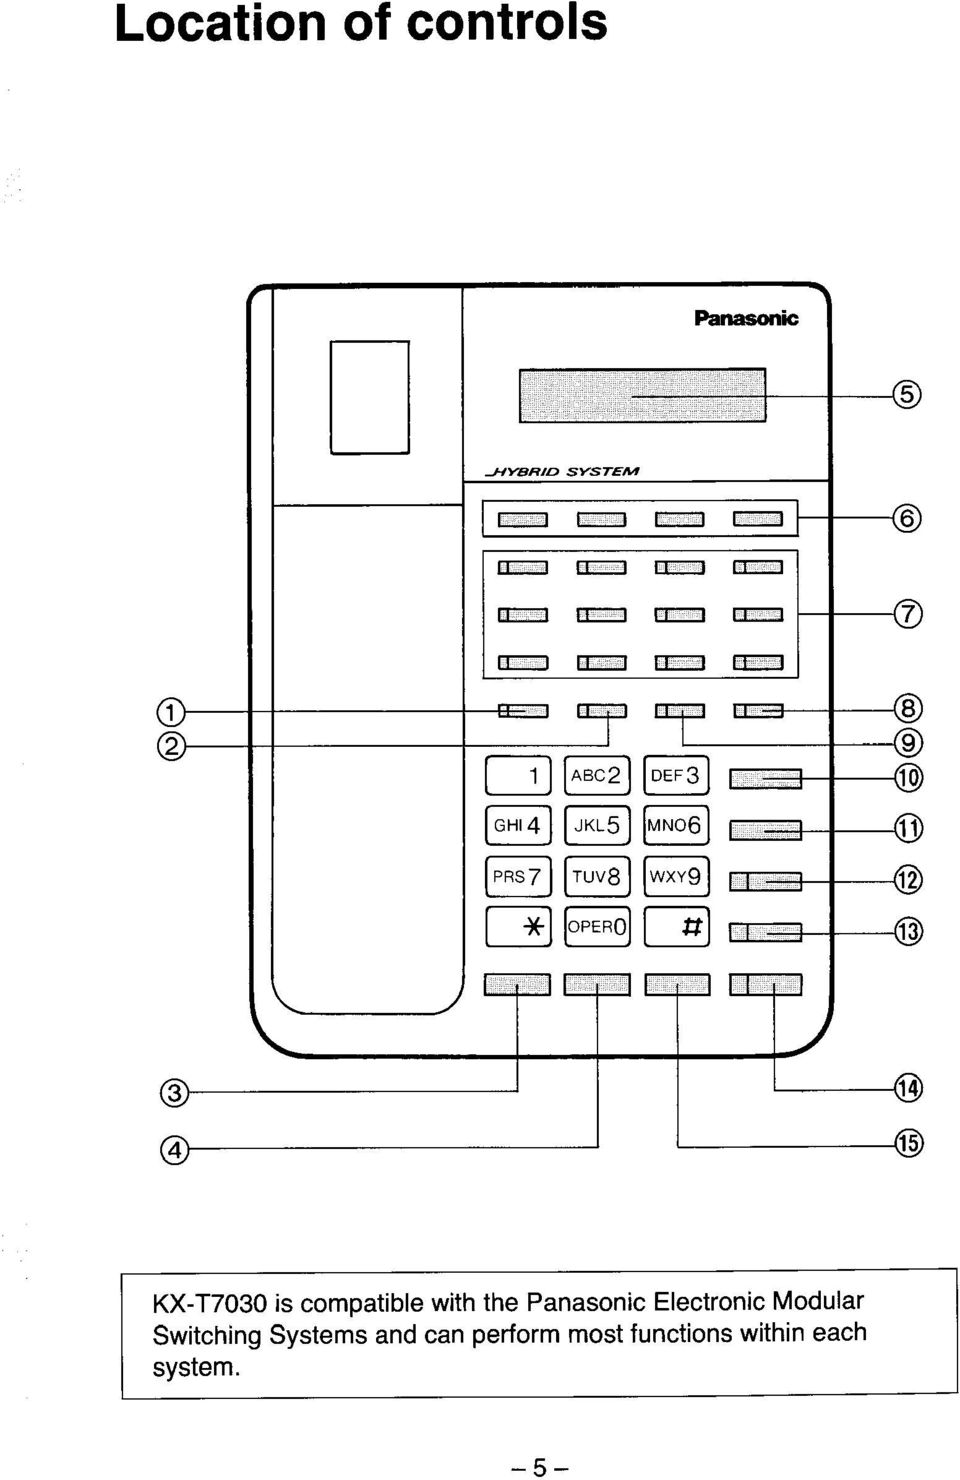 Panasonic Electronic Modular Switching Systems